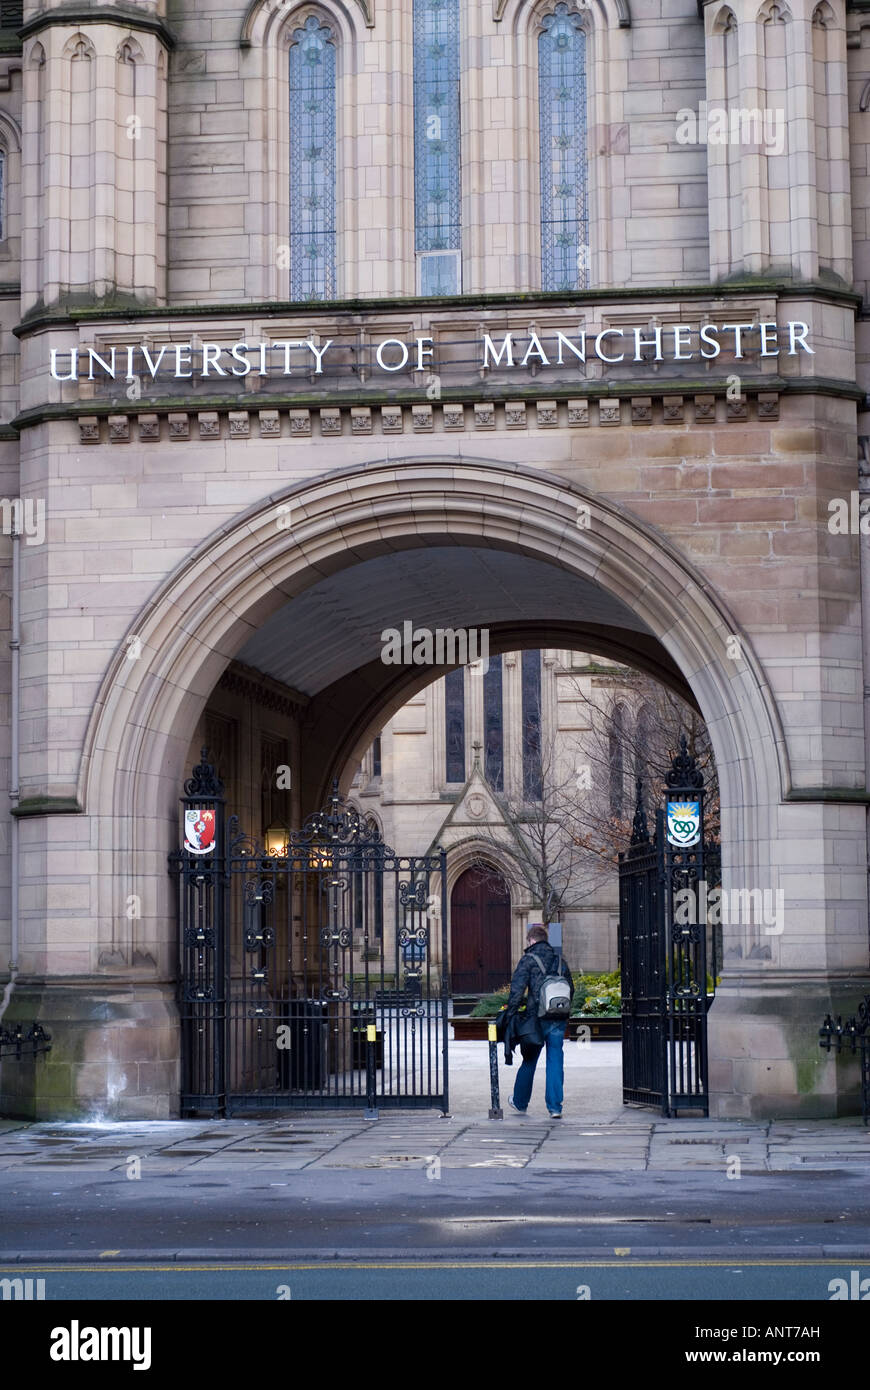 Student walking dans le bâtiment de l'Université de Manchester UK Banque D'Images